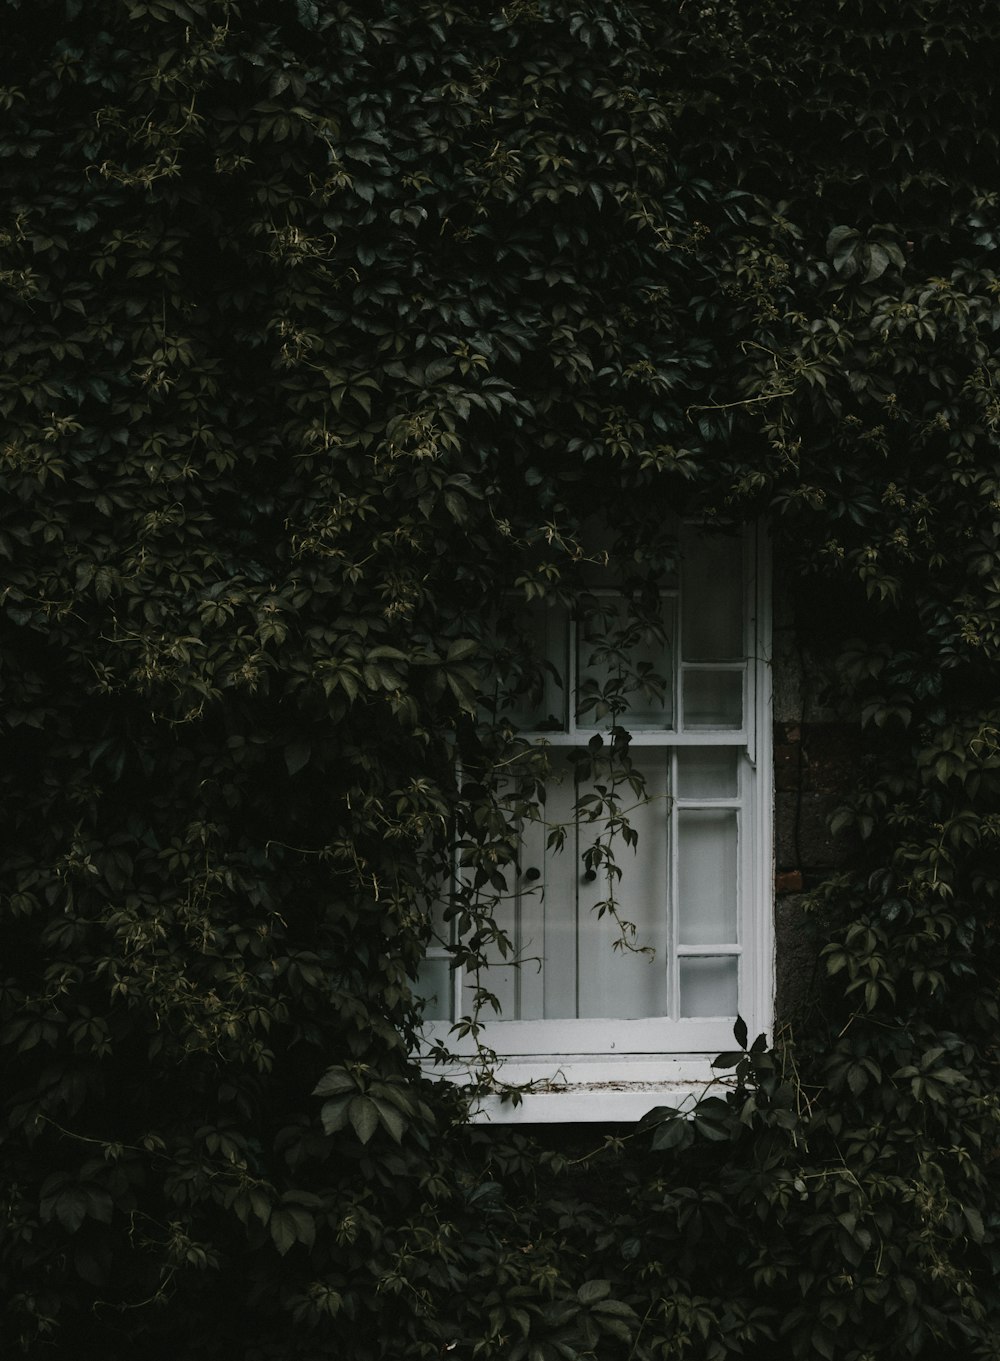 finestra di legno bianco circondata da viti verdi